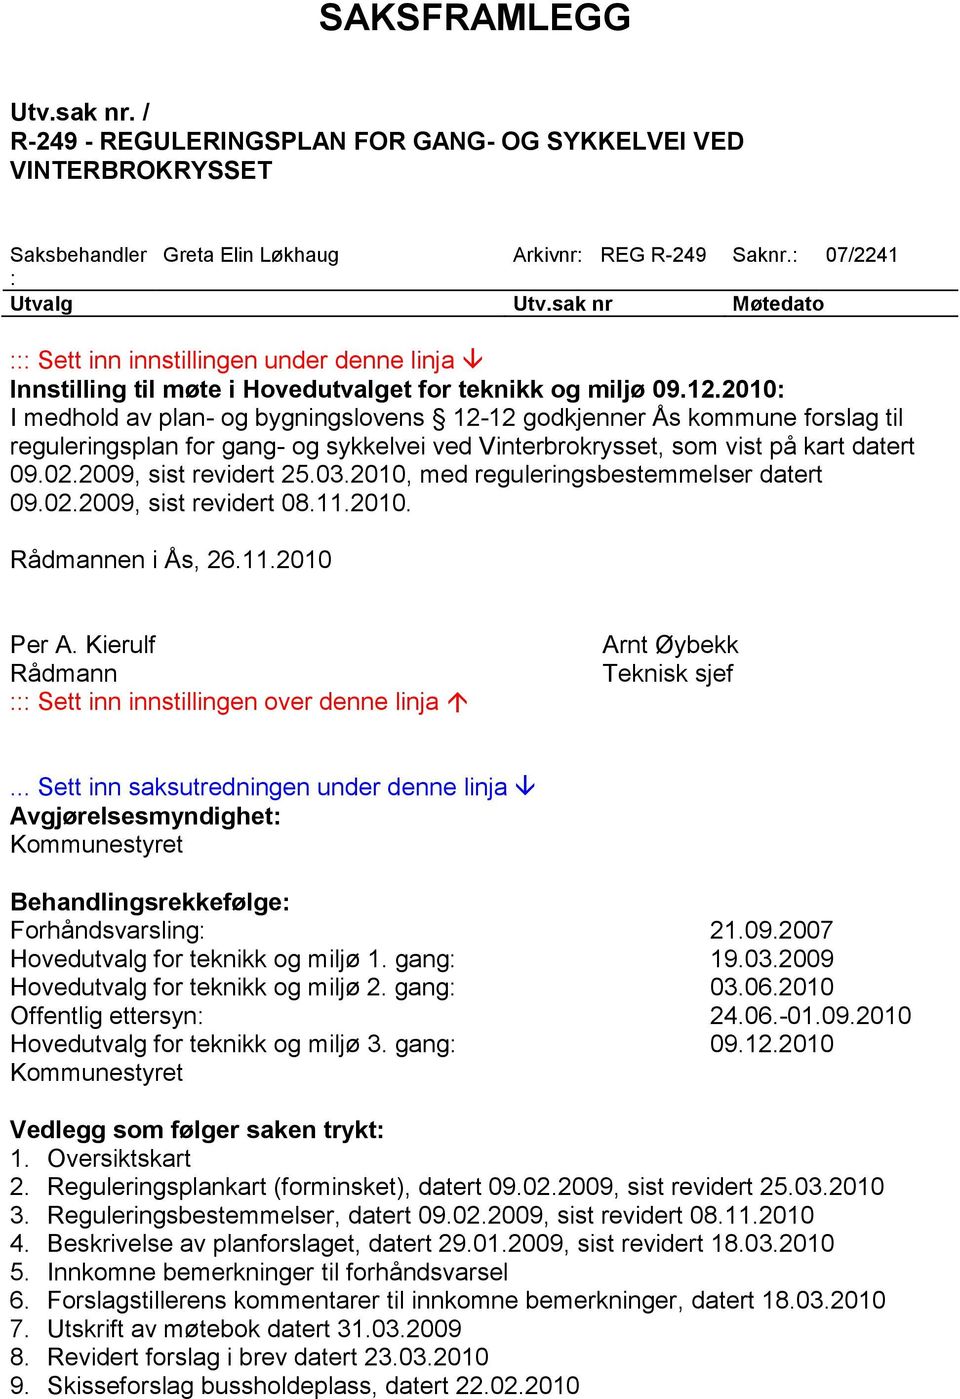 2010: I medhold av plan- og bygningslovens 12-12 godkjenner Ås kommune forslag til reguleringsplan for gang- og sykkelvei ved Vinterbrokrysset, som vist på kart datert 09.02.2009, sist revidert 25.03.